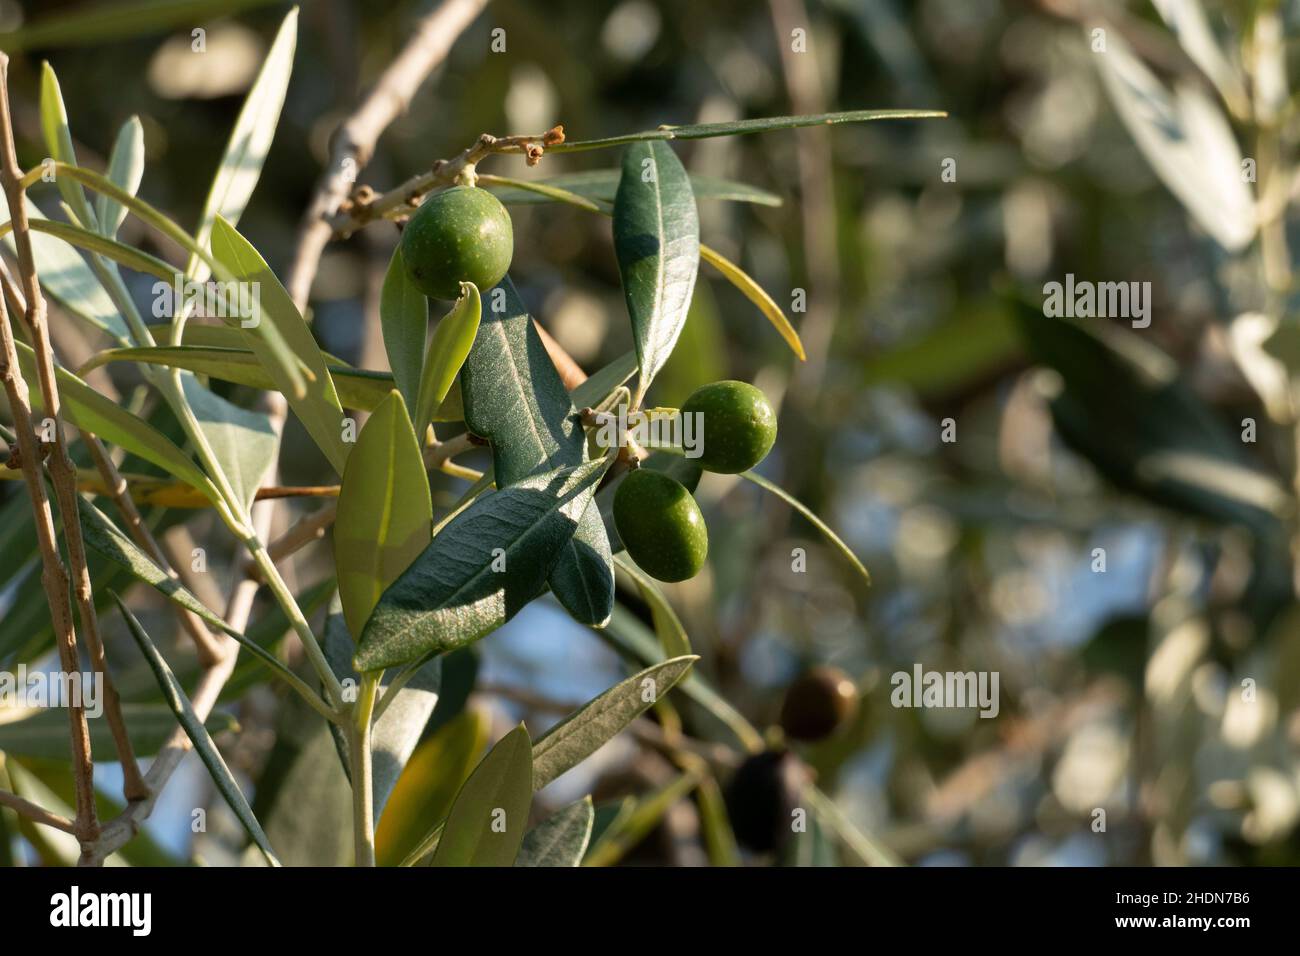 Oliven Früchte mit Blättern, hängen am Baum in einem Olivenhain Foto Stock